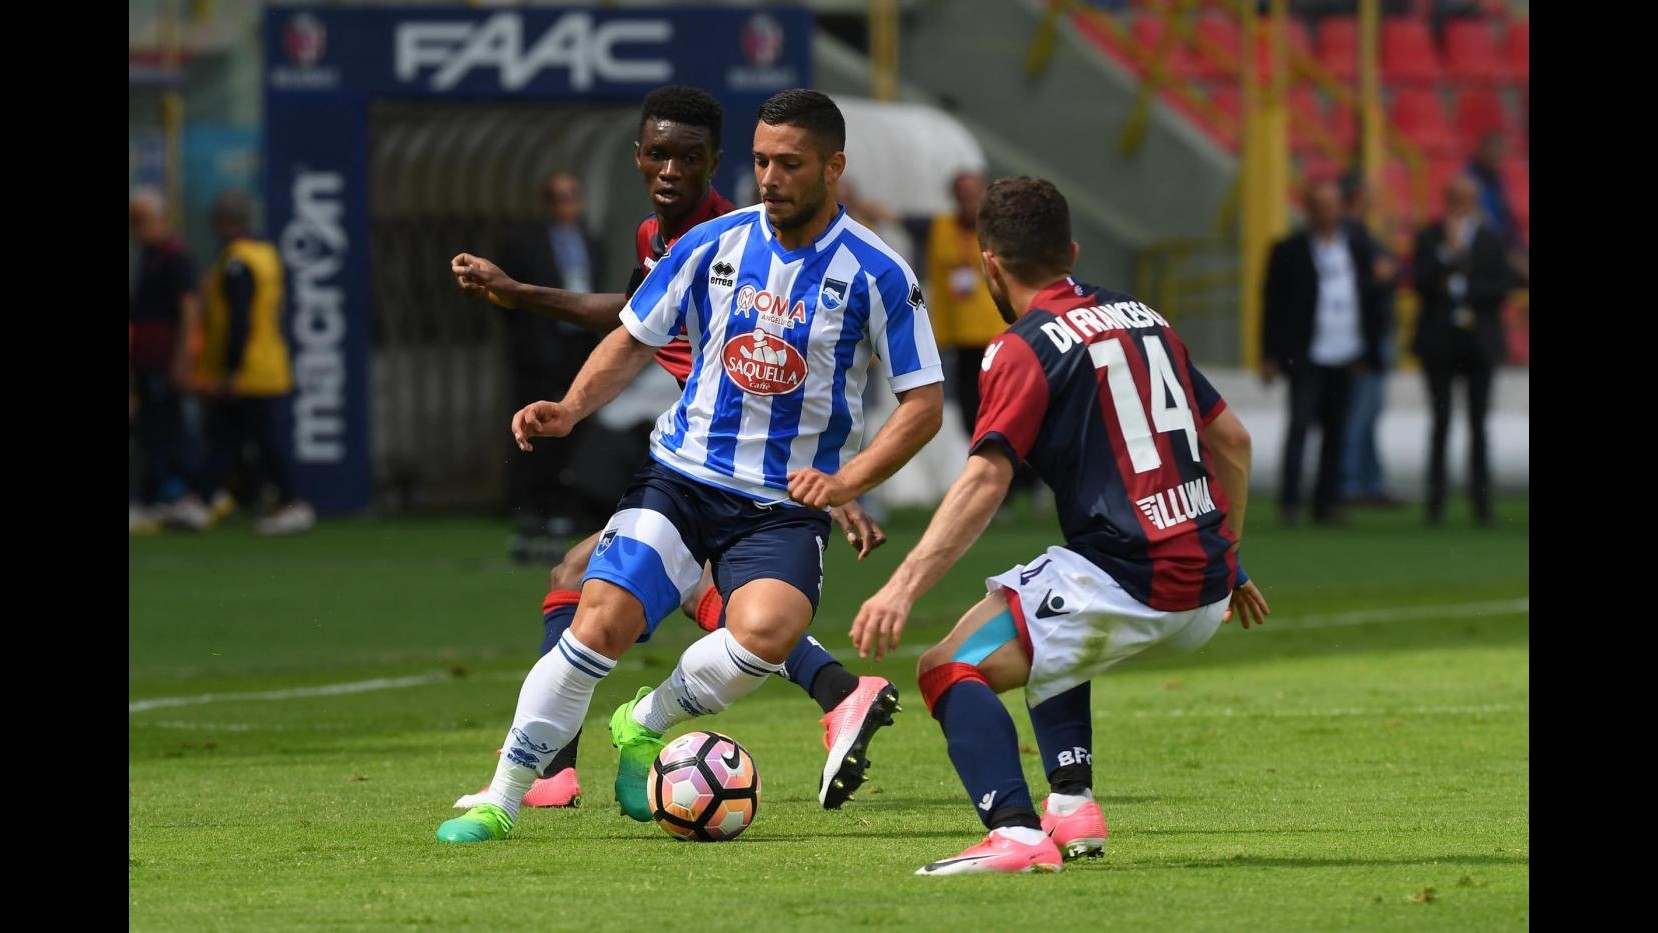 FOTO Serie A, Bologna stende Pescara 3-1: doppio Destro